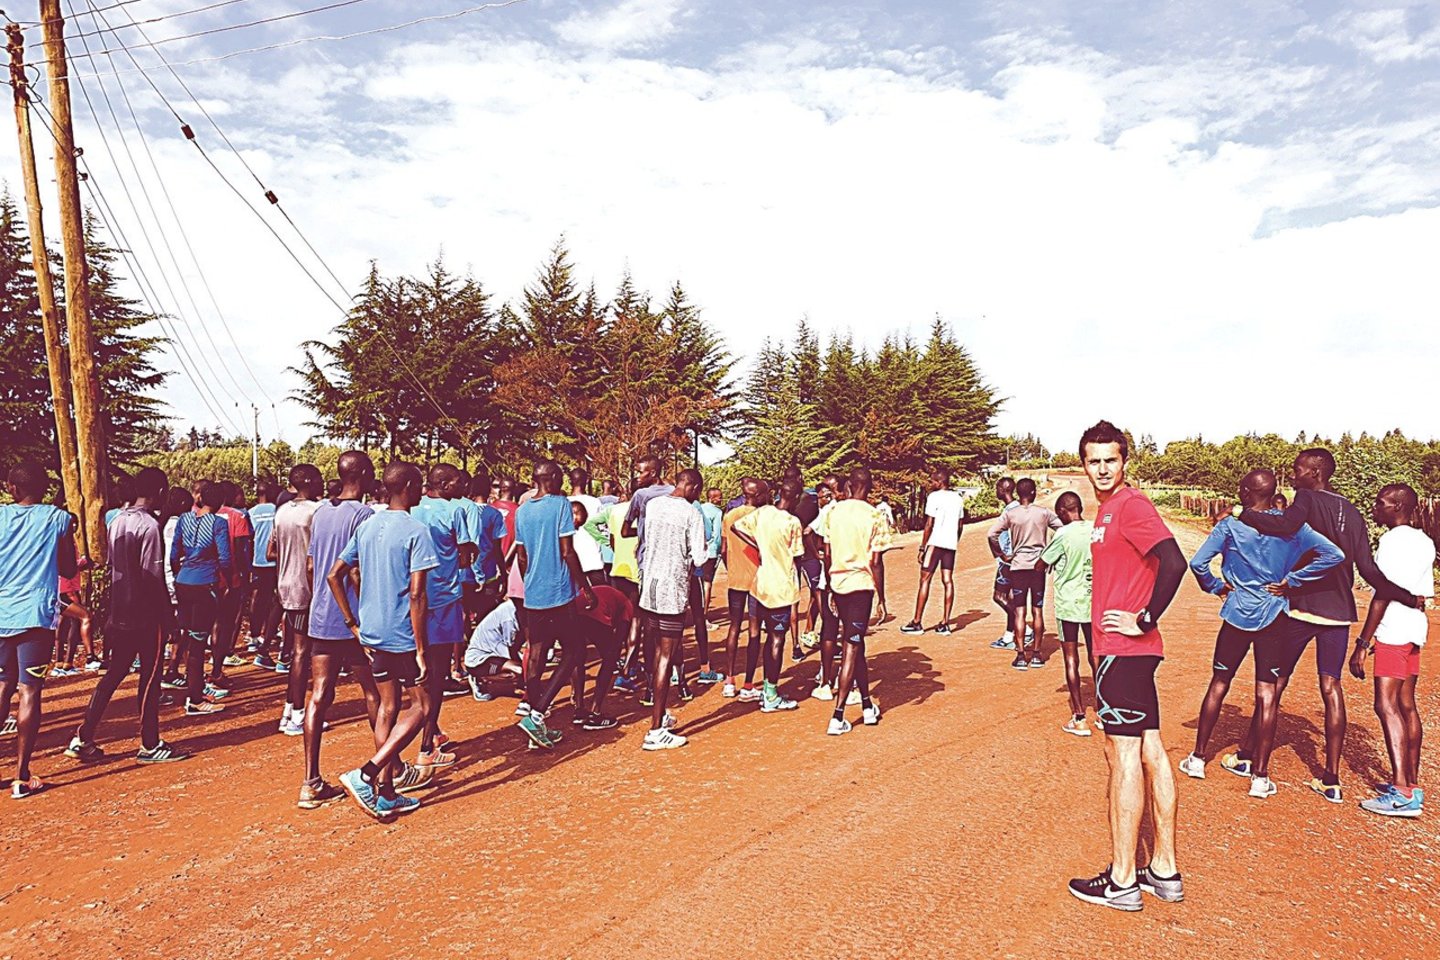 Pagrindinis Daliaus kelionės į Keniją tikslas buvo pajausti bėgimo dvasią šalyje, kurioje užauga vieni pajėgiausių planetos bėgikų.<br>Nuotr. iš asmeninio albumo